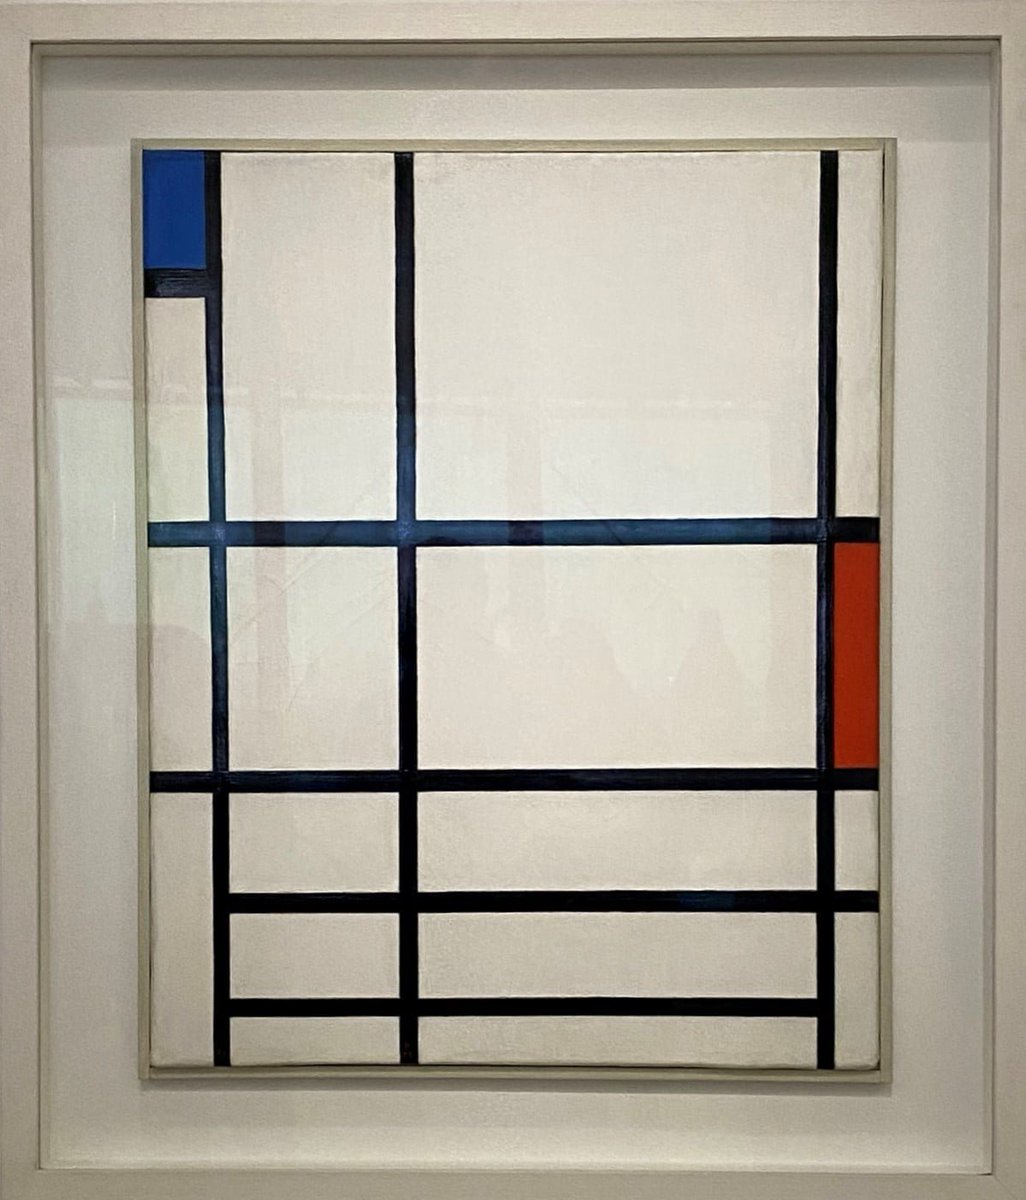 #LaTraverséedesApparences Mondrian, Composition en rouge, bleu et blanc II, 1937 « Yves Saint Laurent aux musées » au @CentrePompidou  À revoir sur ma chaîne youtu.be/0x_ZBusggNU